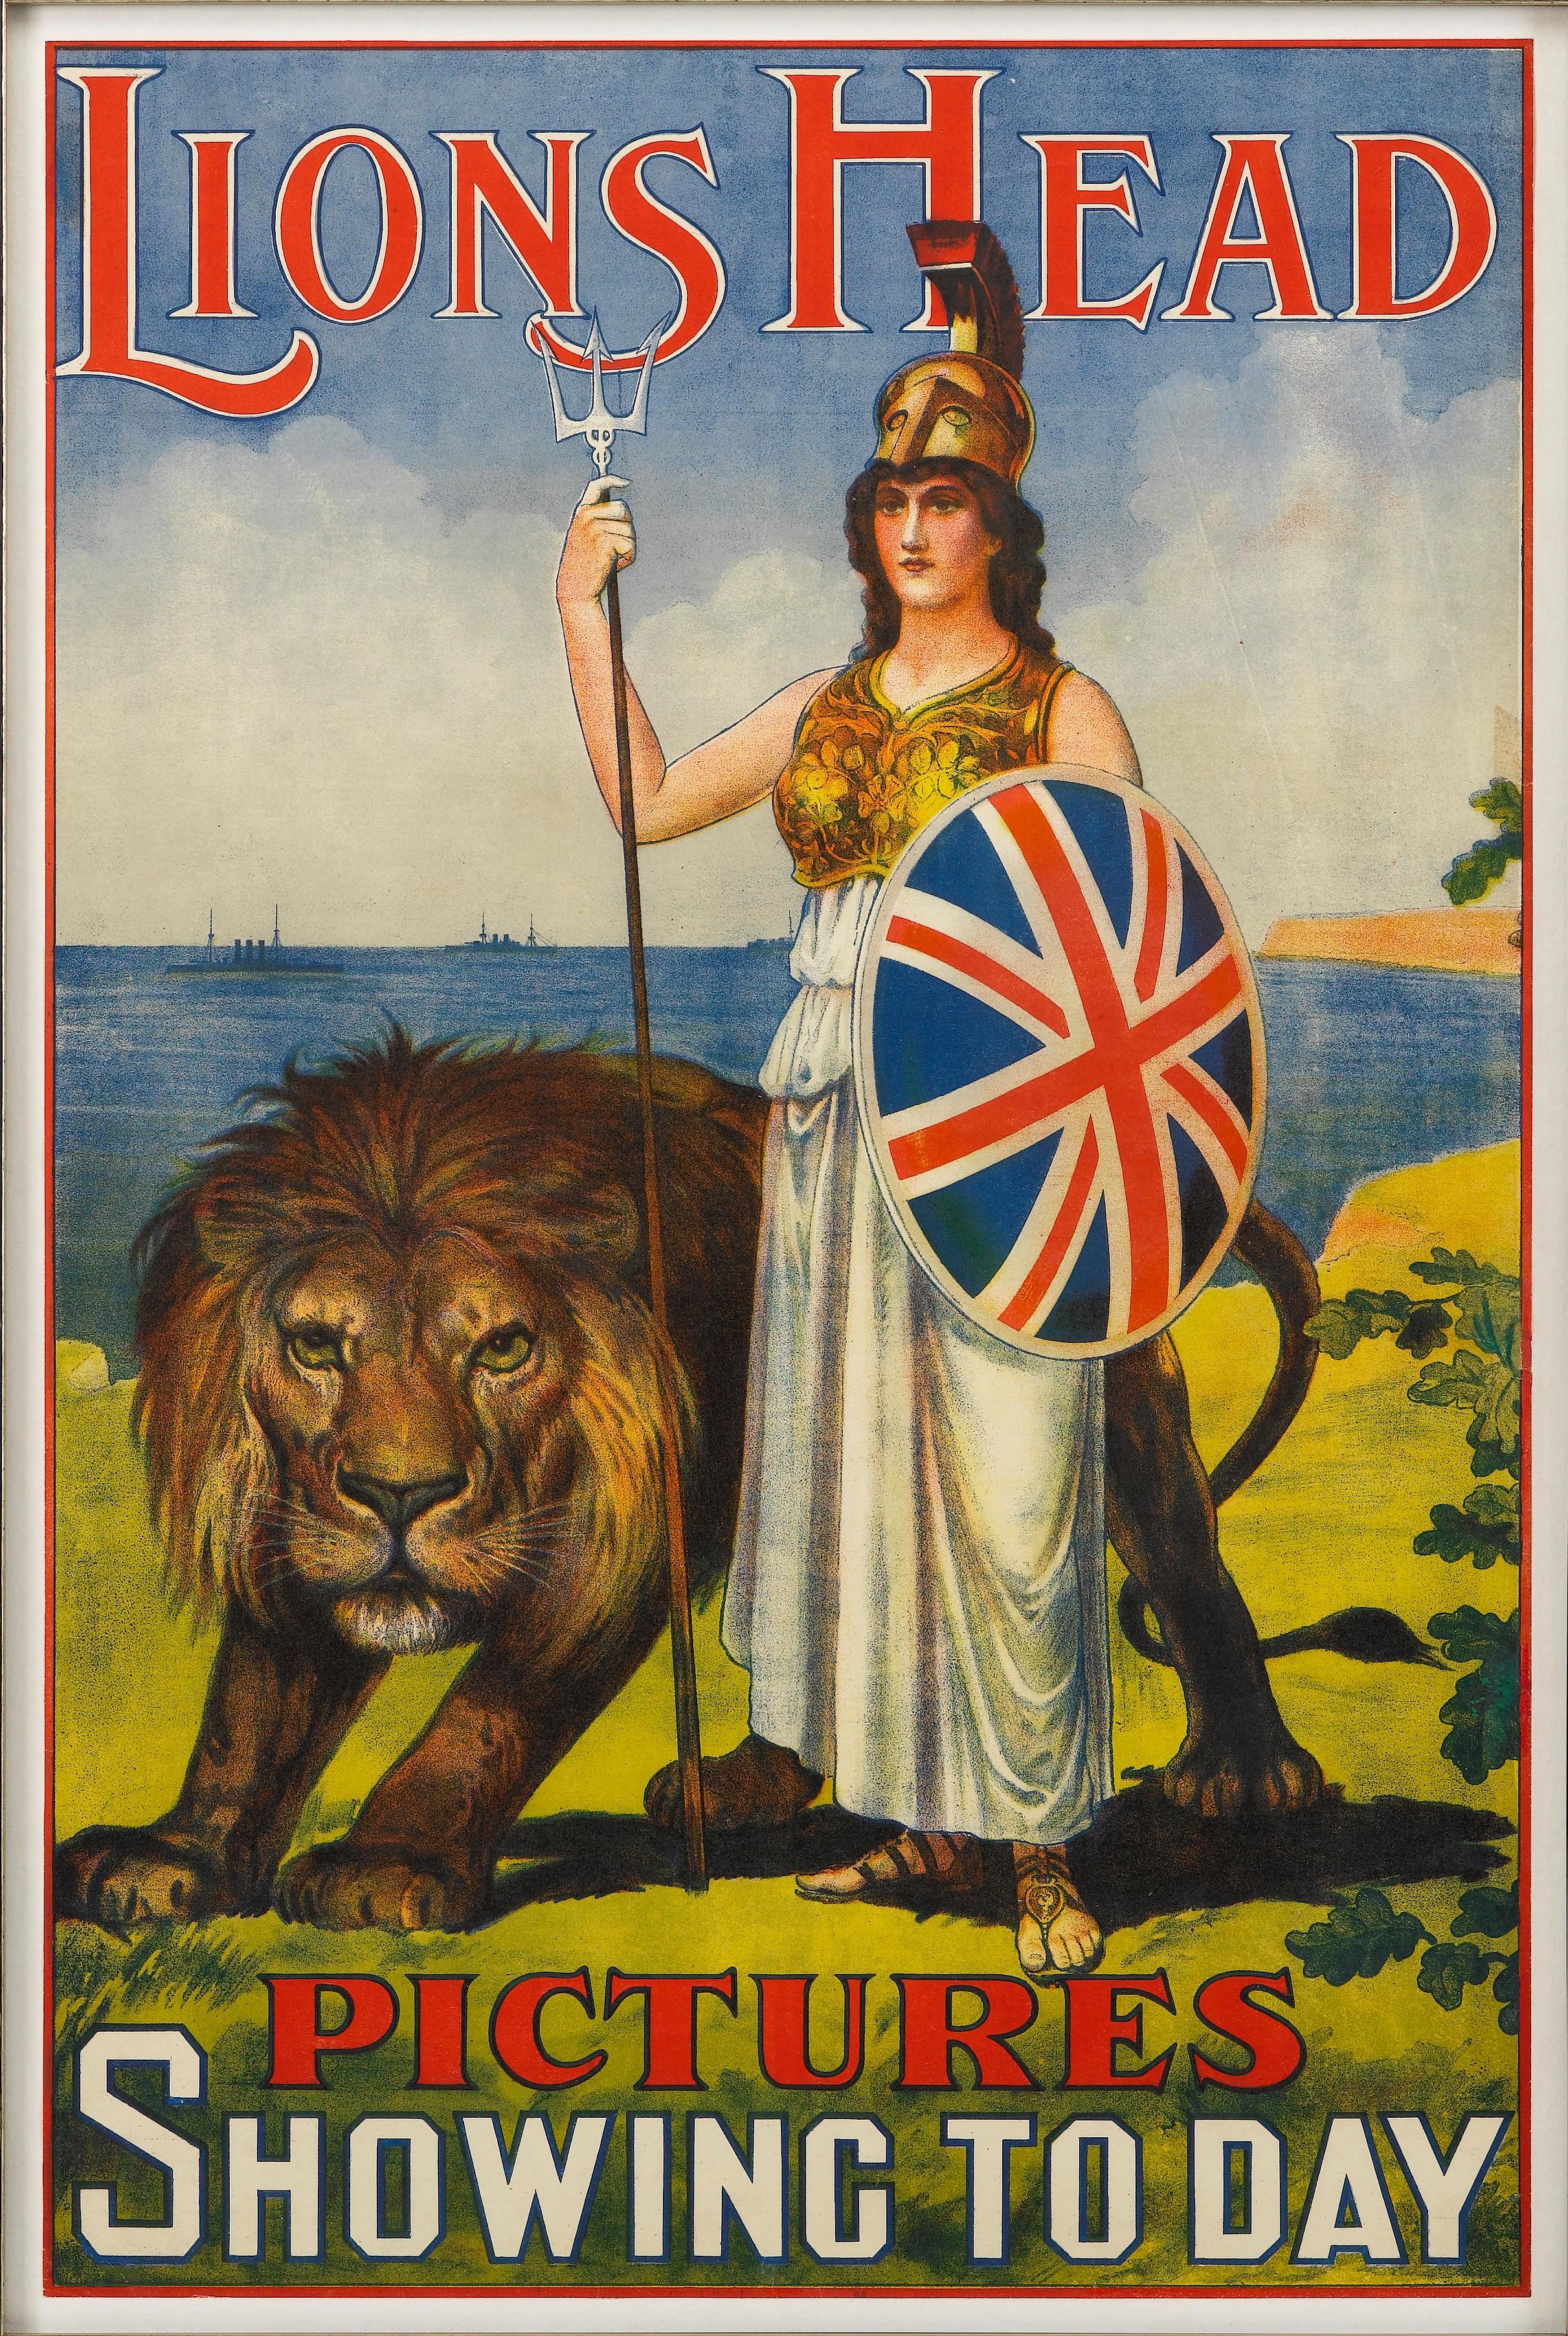 Il s'agit d'une magnifique affiche publicitaire originale pour Lions Head Pictures. L'affiche date d'environ 1911. L'affiche a été conçue par un artiste inconnu.

L'affiche représente Britannia, une représentation féminine des îles britanniques.